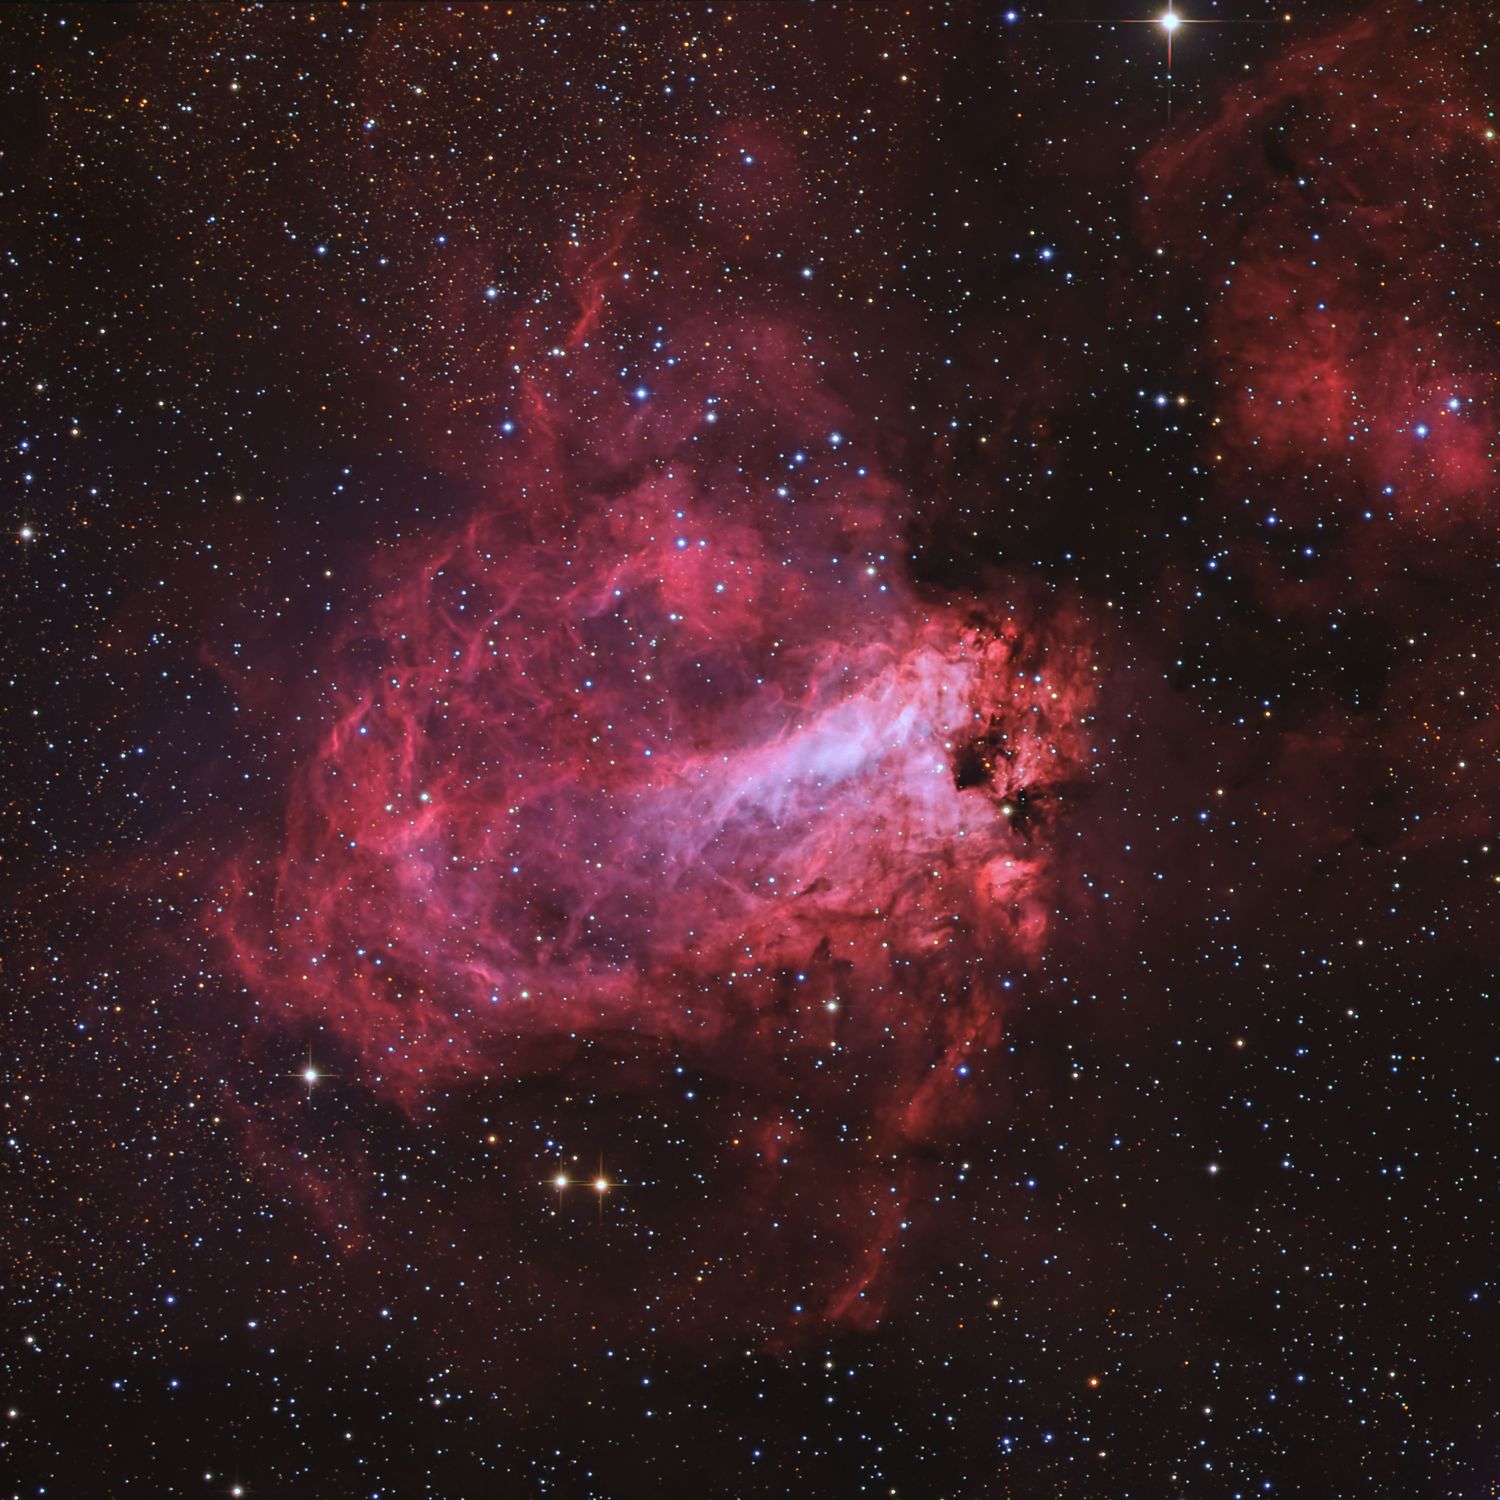 Messier 17